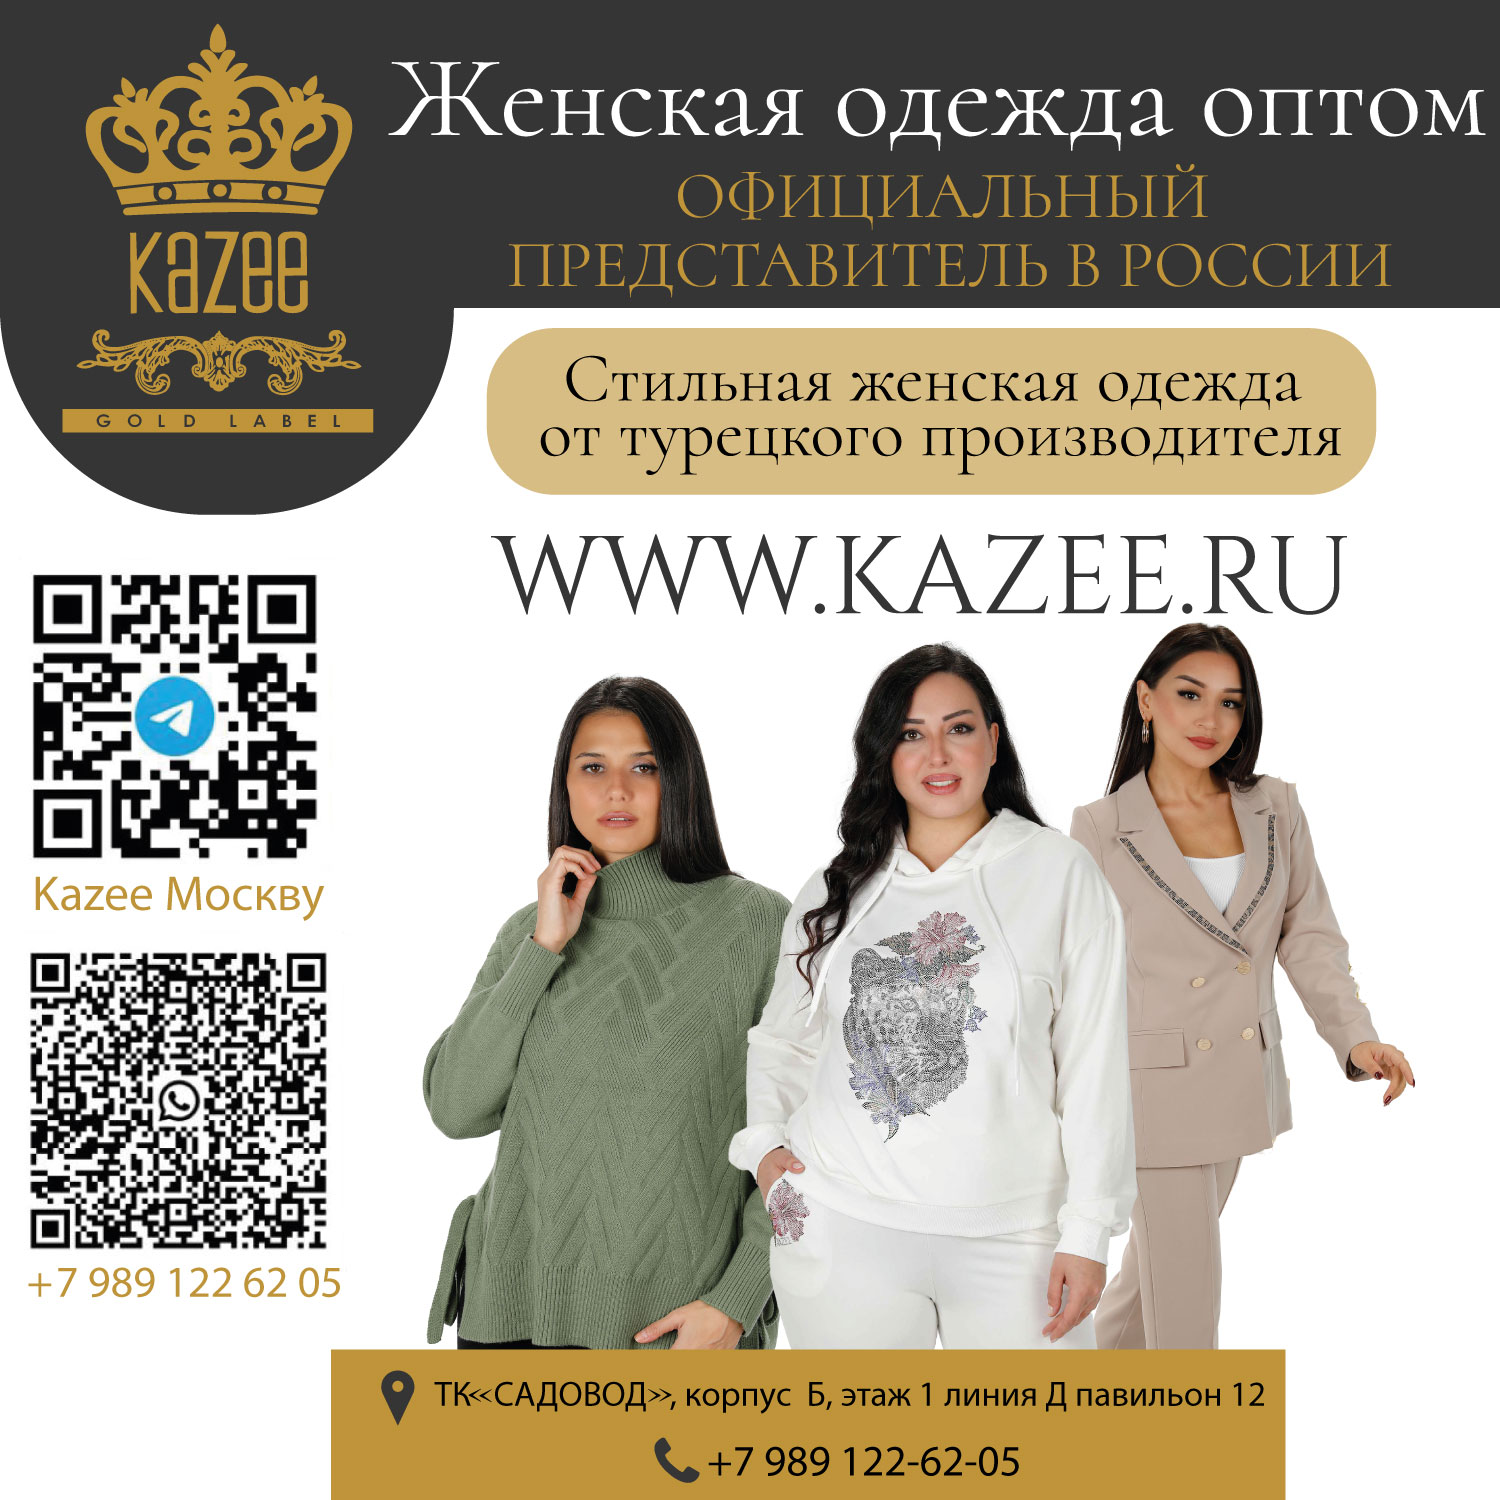 الممثل الرسمي لمتجر KAZEE في روسيا